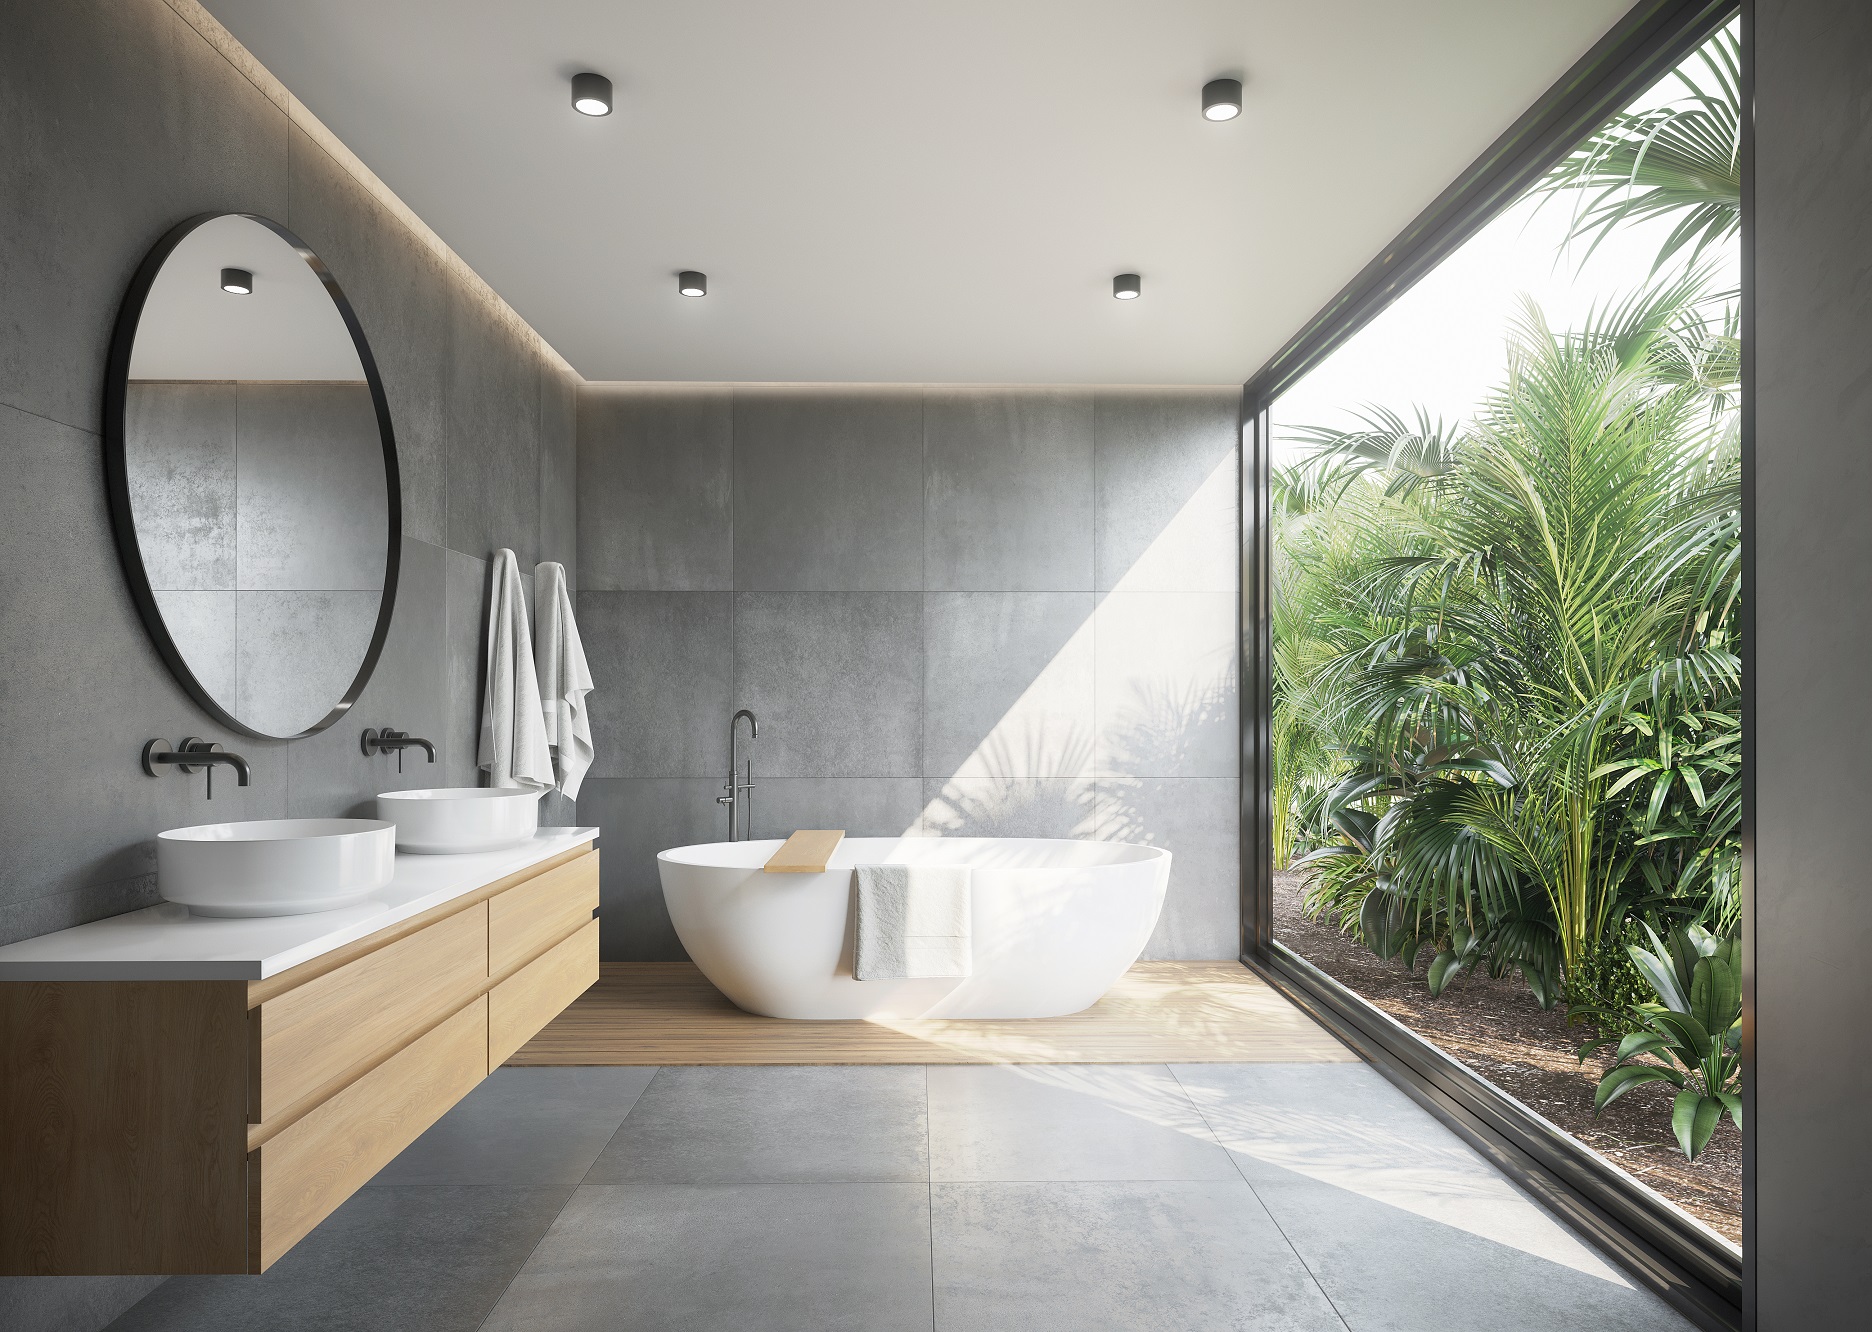 13 melhor ideia de Casas de banho preto  ideias para casas de banho,  banheiros modernos, decoração banheiro